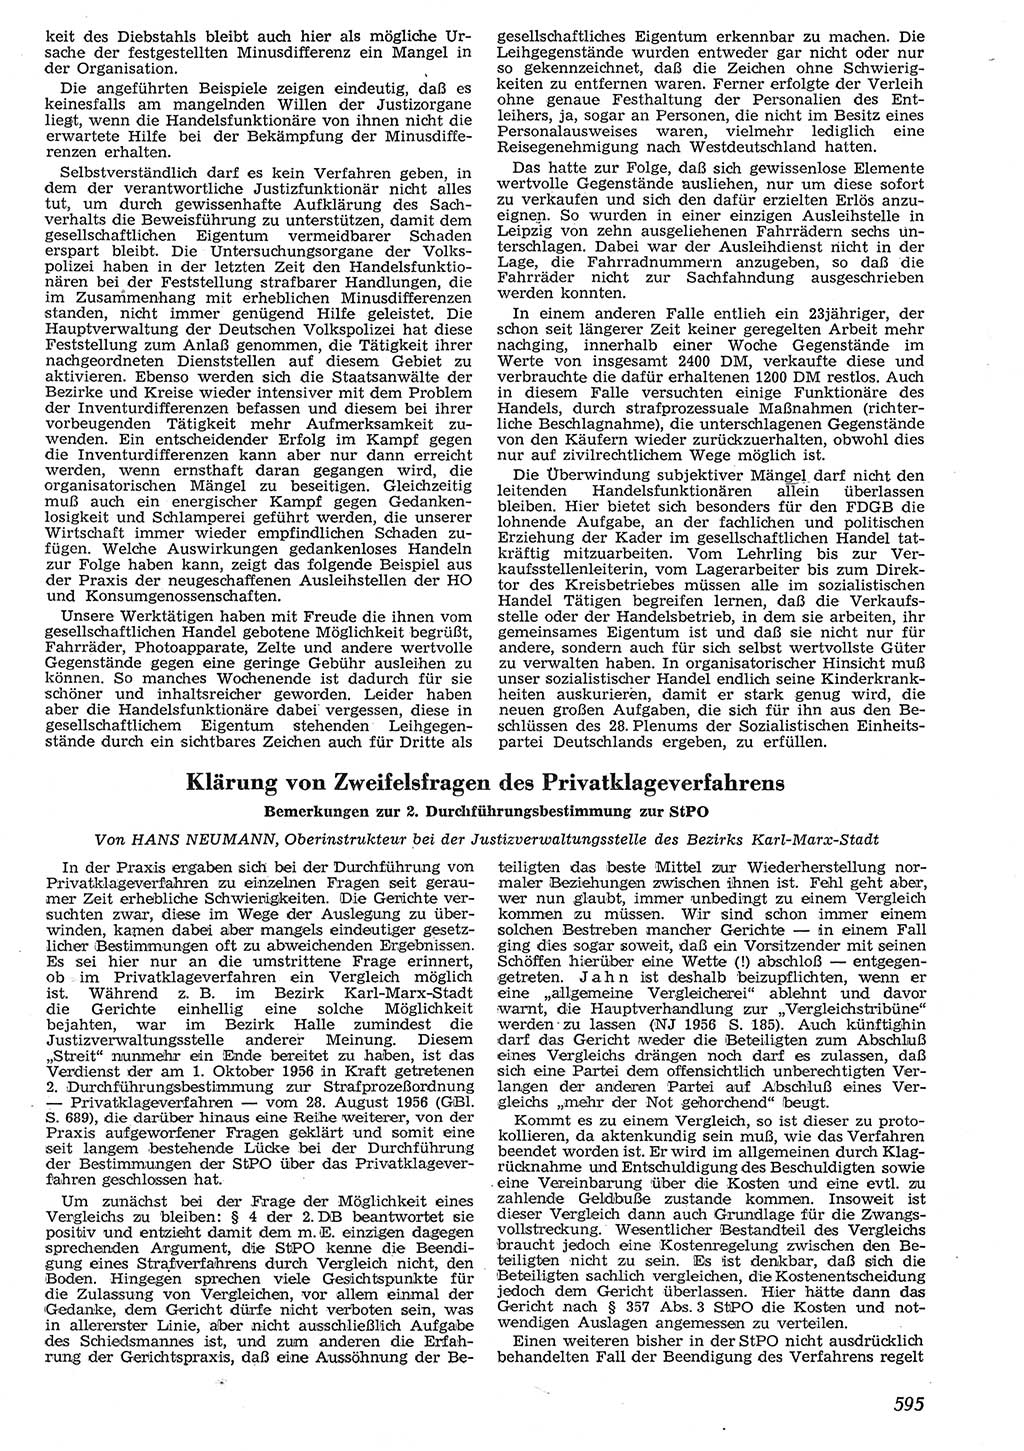 Neue Justiz (NJ), Zeitschrift für Recht und Rechtswissenschaft [Deutsche Demokratische Republik (DDR)], 10. Jahrgang 1956, Seite 595 (NJ DDR 1956, S. 595)